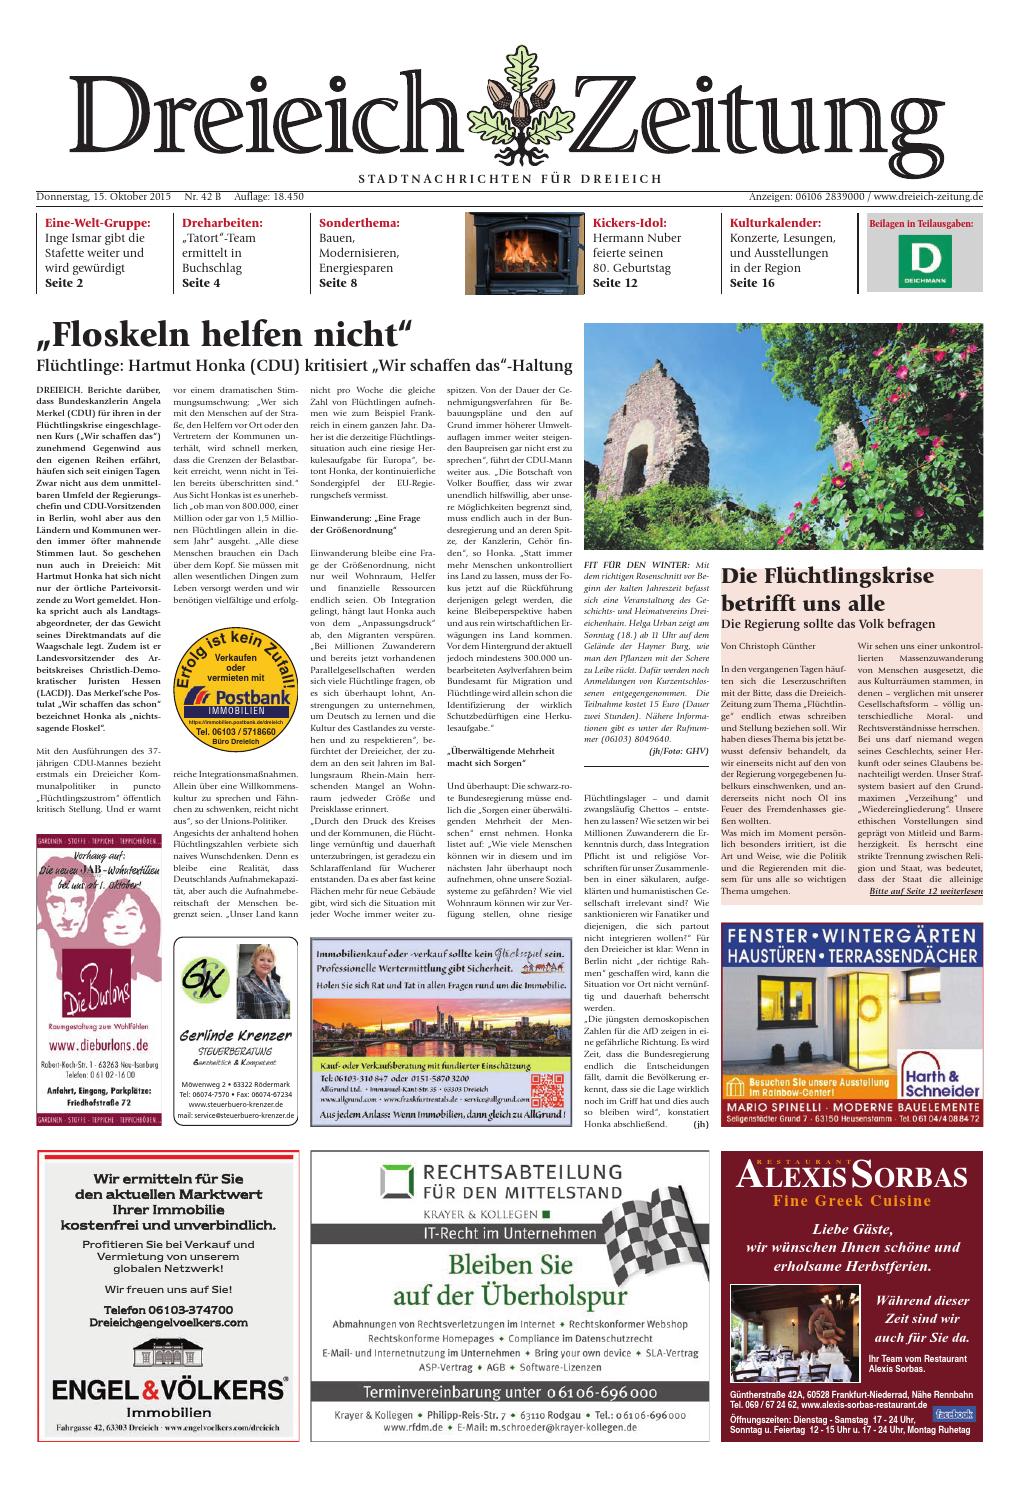 Holzstele Garten Schön Dz Online 042 15 B by Dreieich Zeitung Fenbach Journal issuu